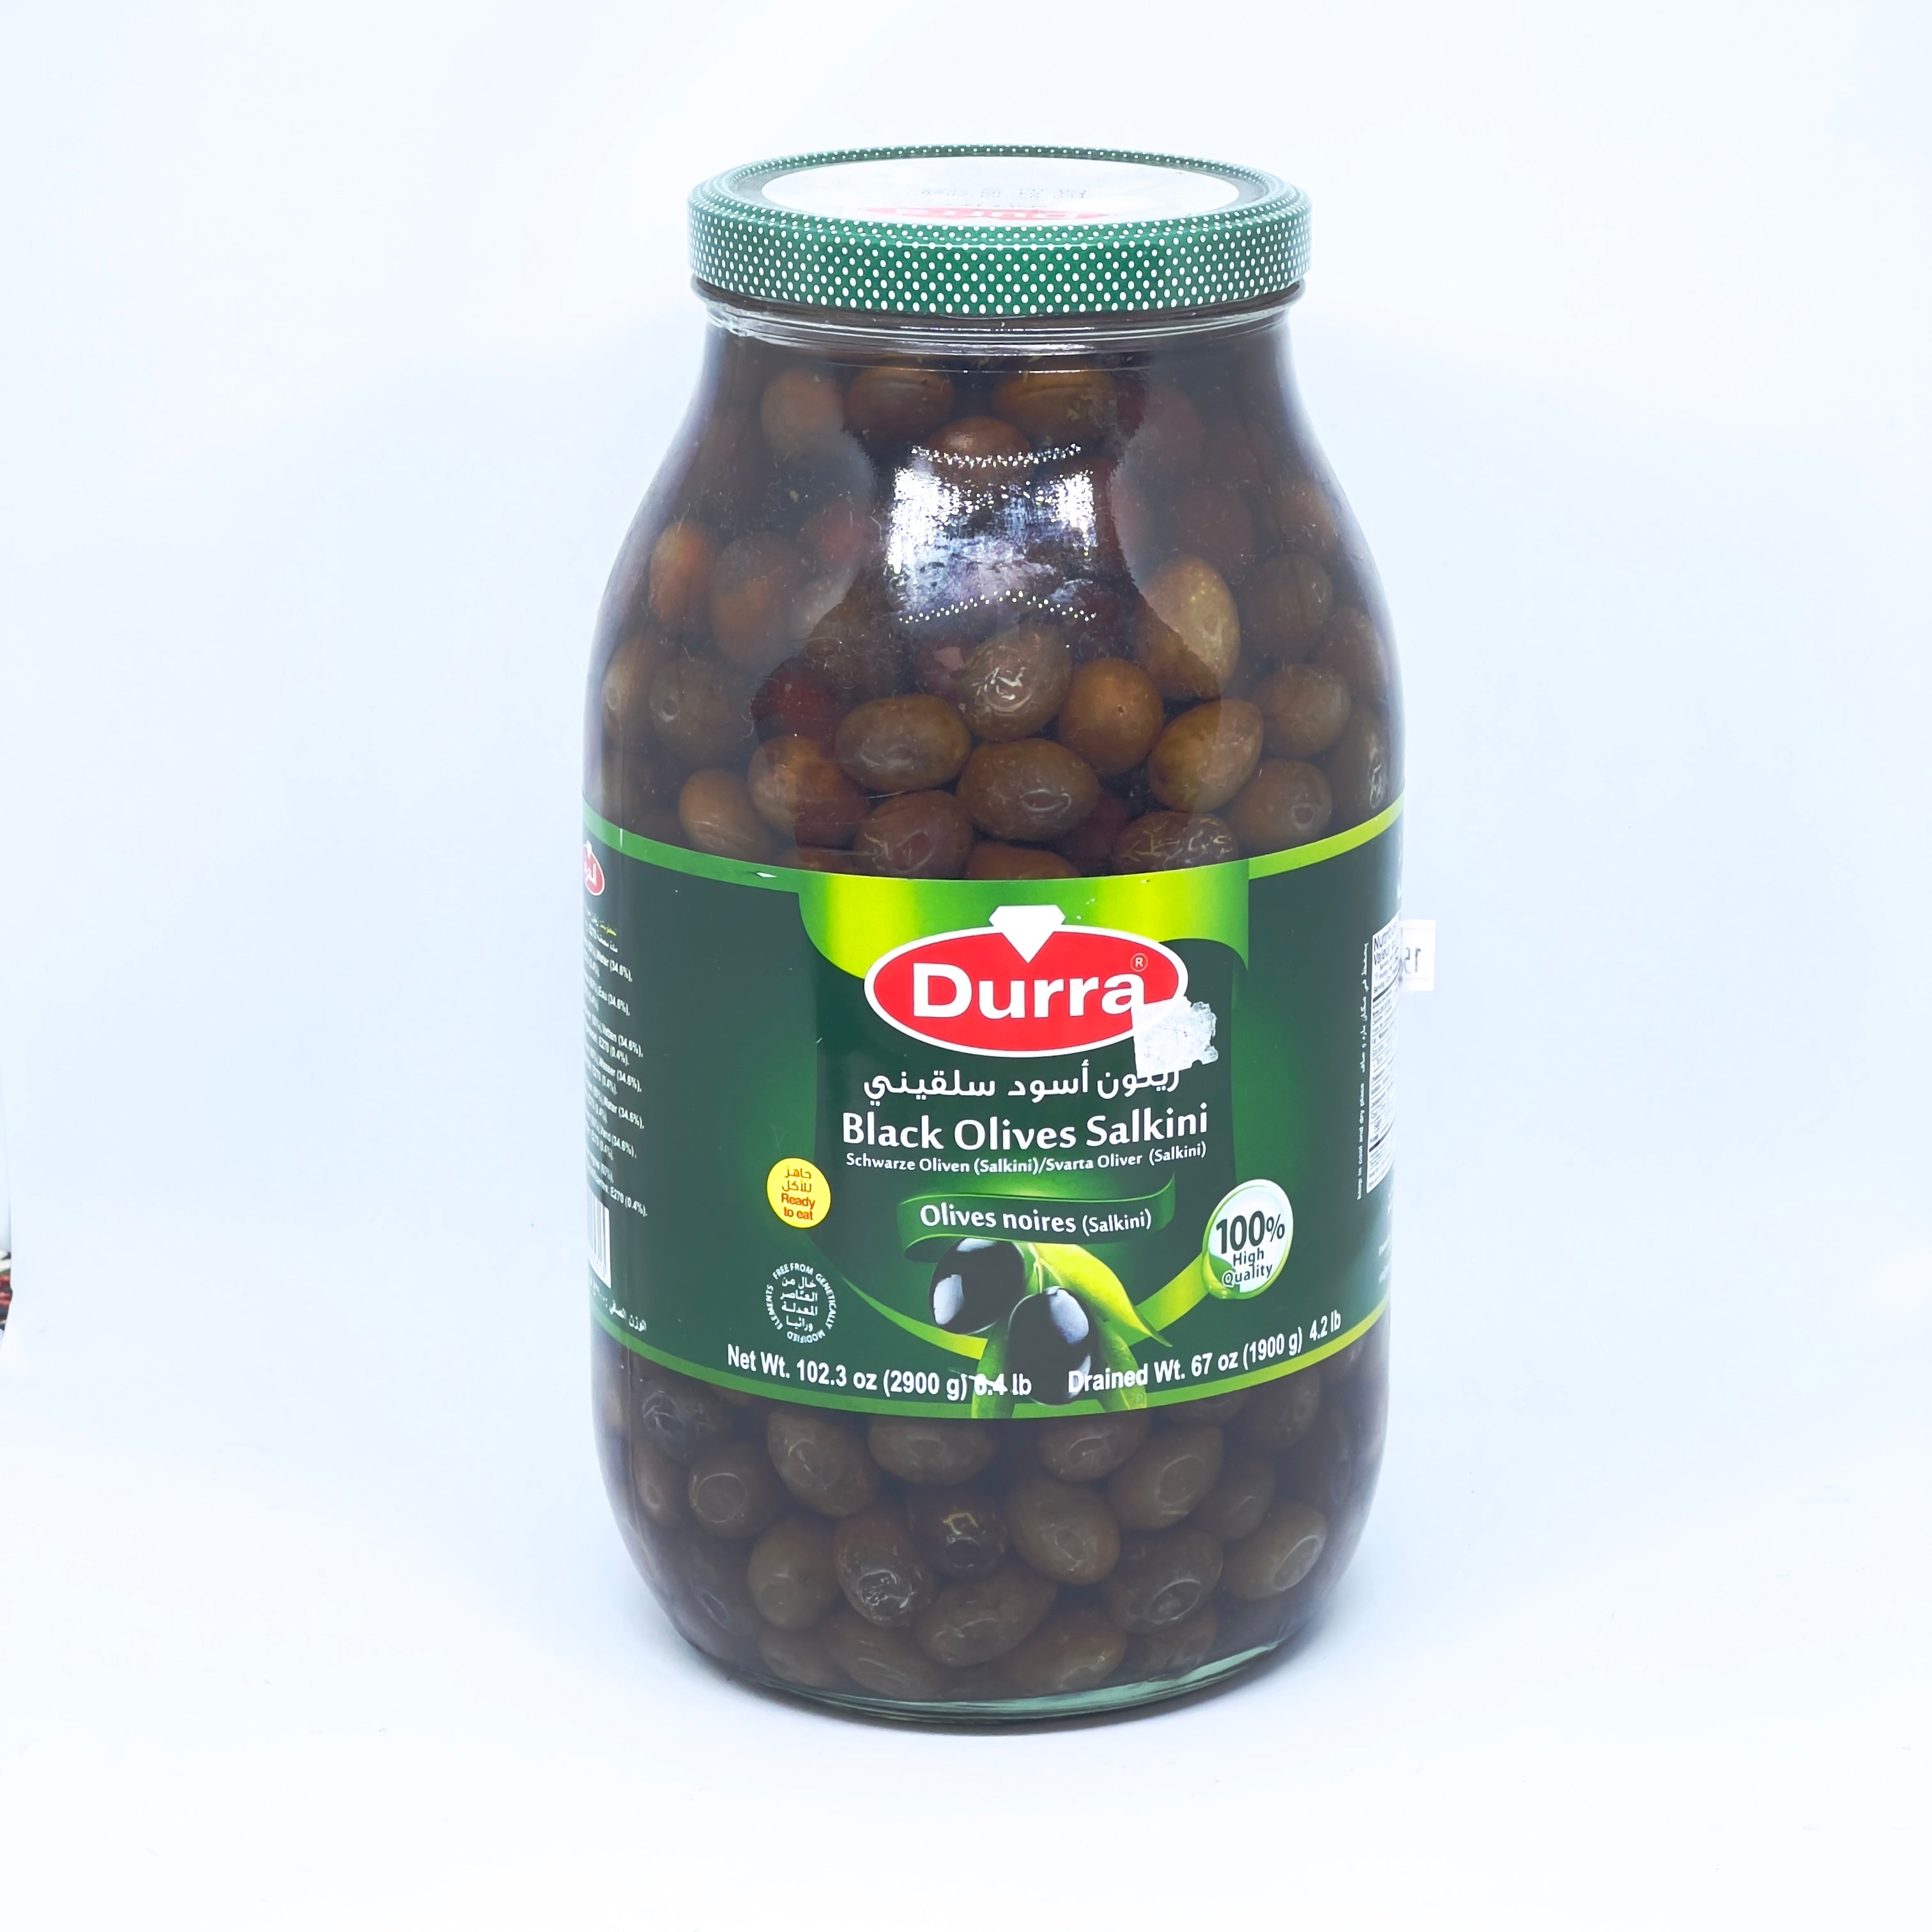 DURRA Black Olives Salkini 2.9kg